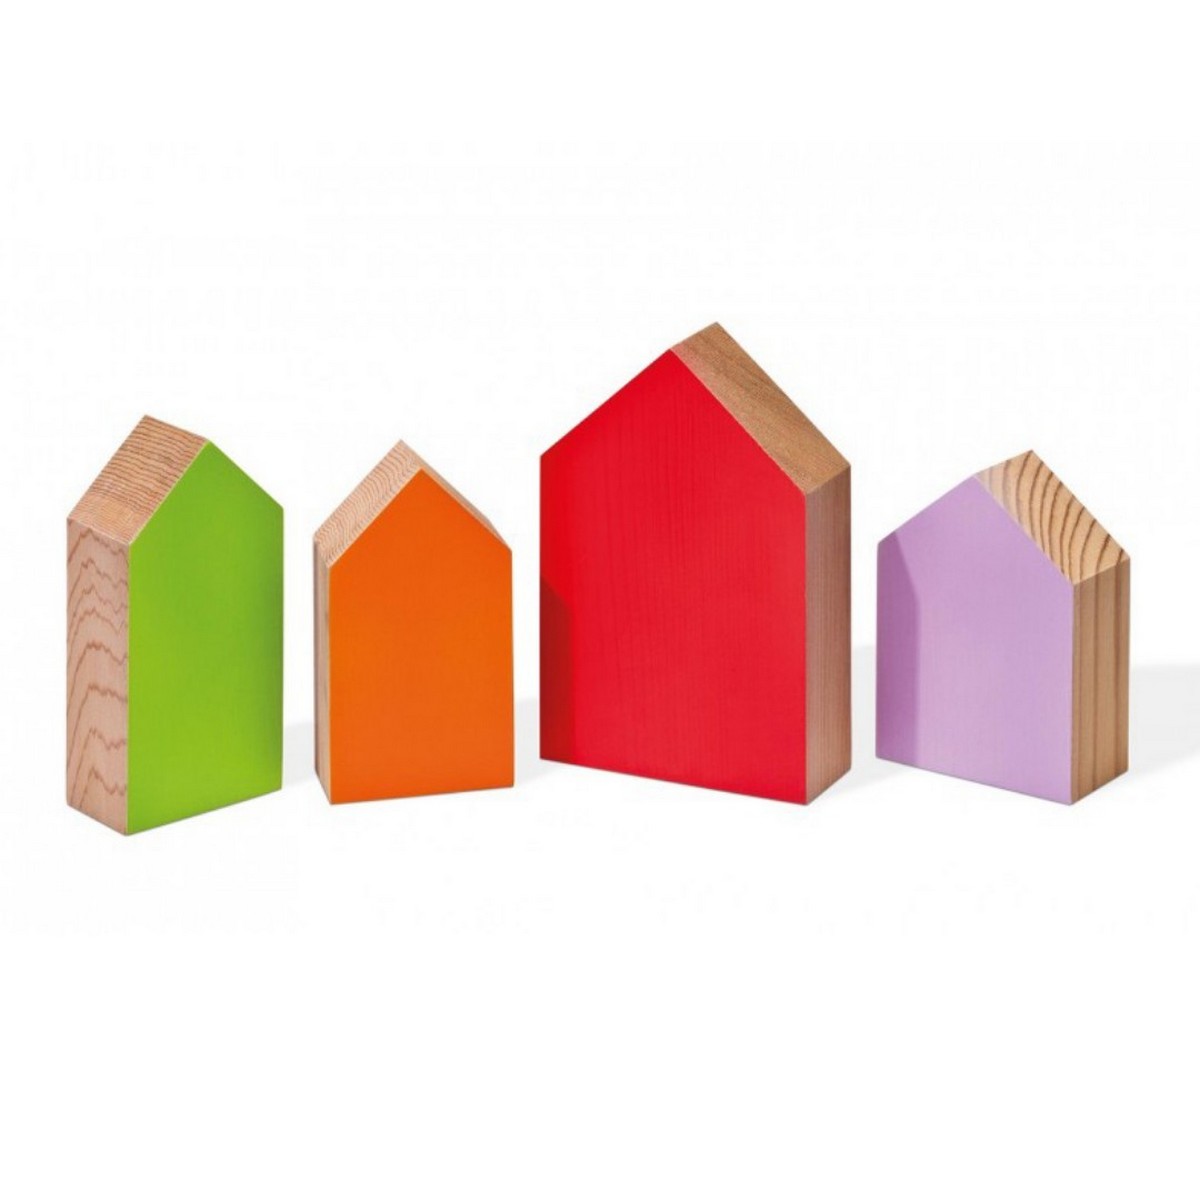 remember protection antimites decorative maisons en cedre colore une idee cadeau chez ugo et lea (2)